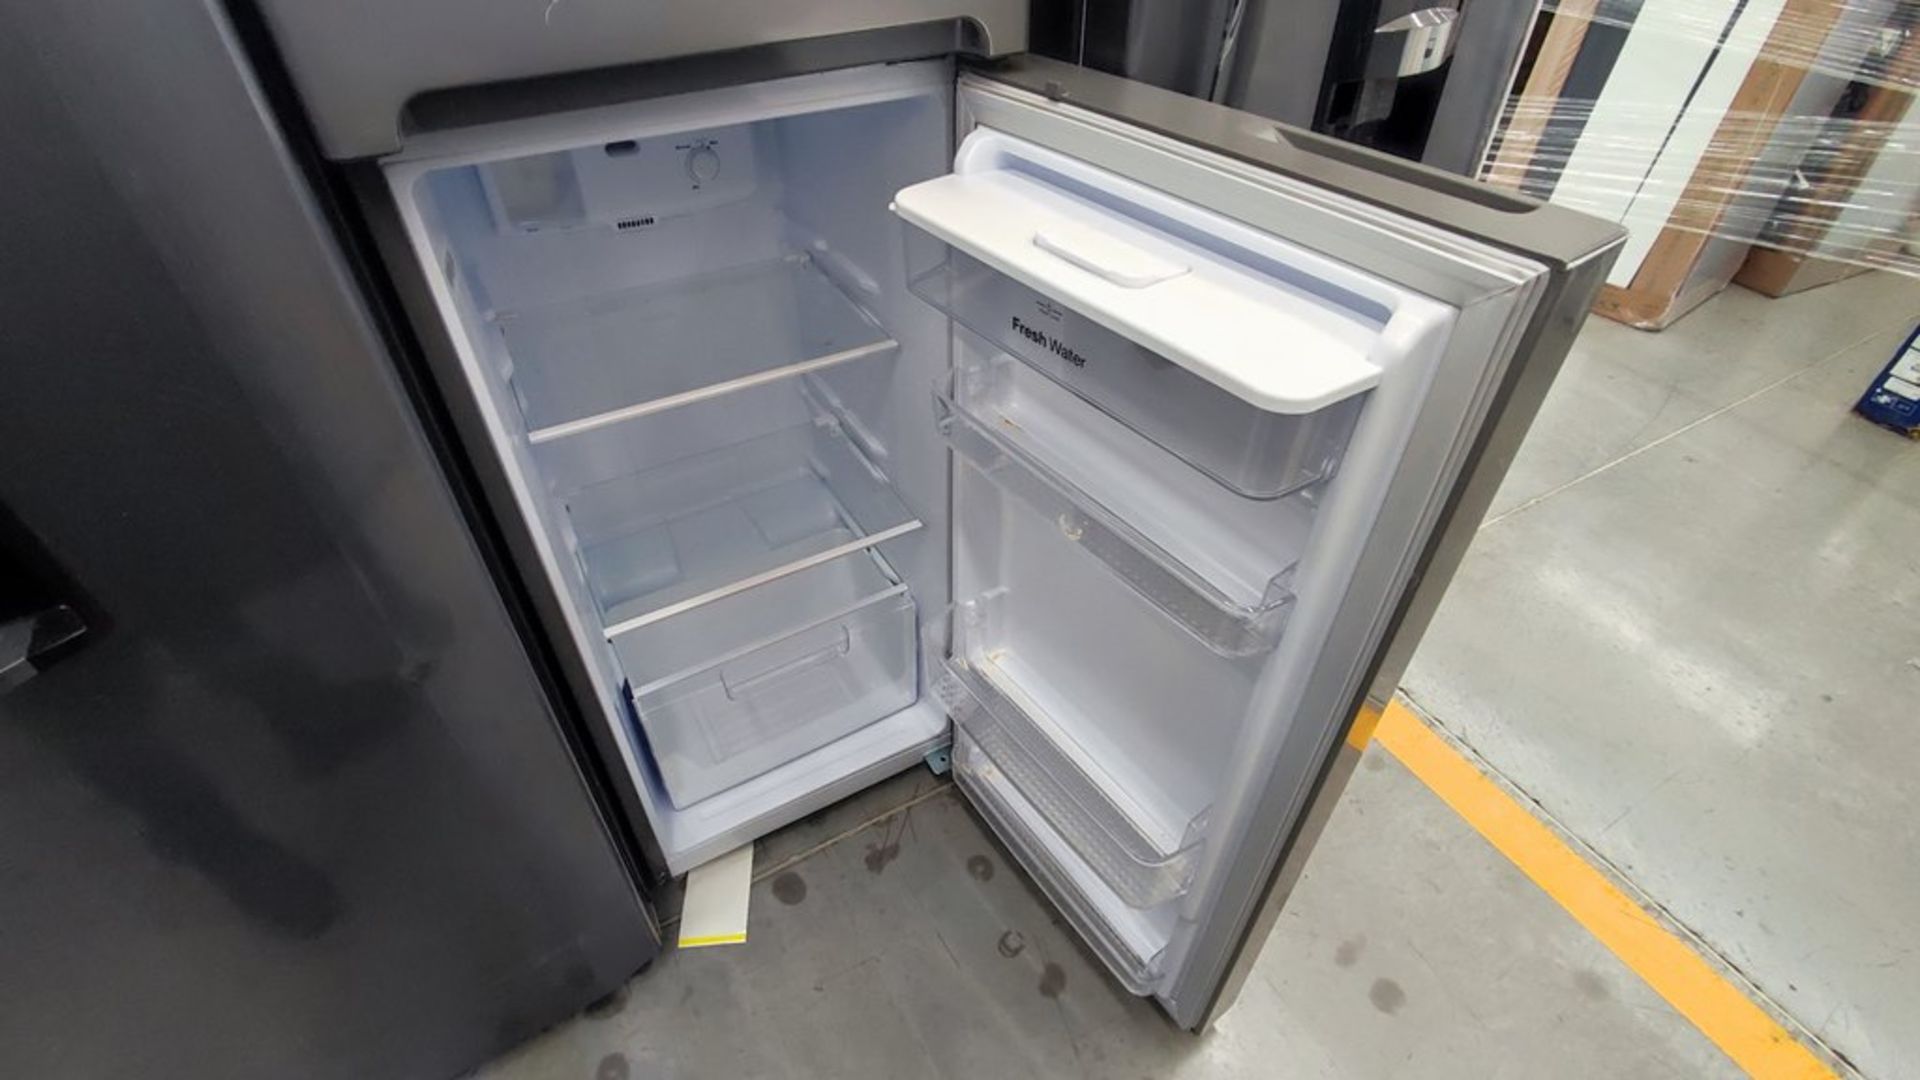 Lote de 2 refrigeradores contiene: 1 Refrigerador Marca Mabe, Modelo RMT400RY, No de serie 2202B401 - Image 14 of 15